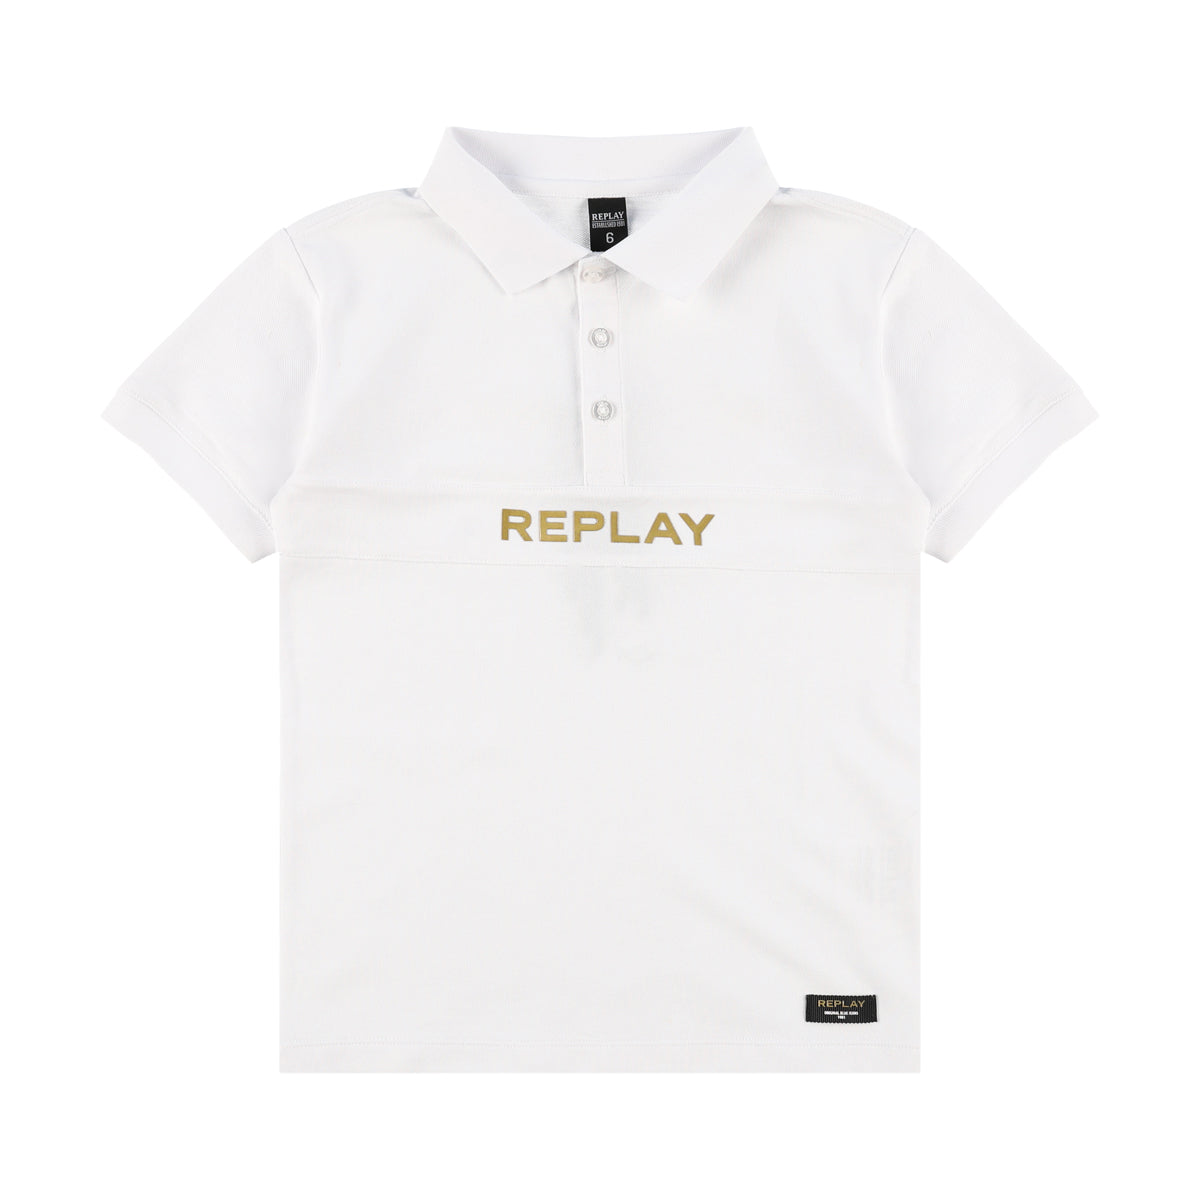 חולצת REPLAY צווארון לוגו באמצע לילדים